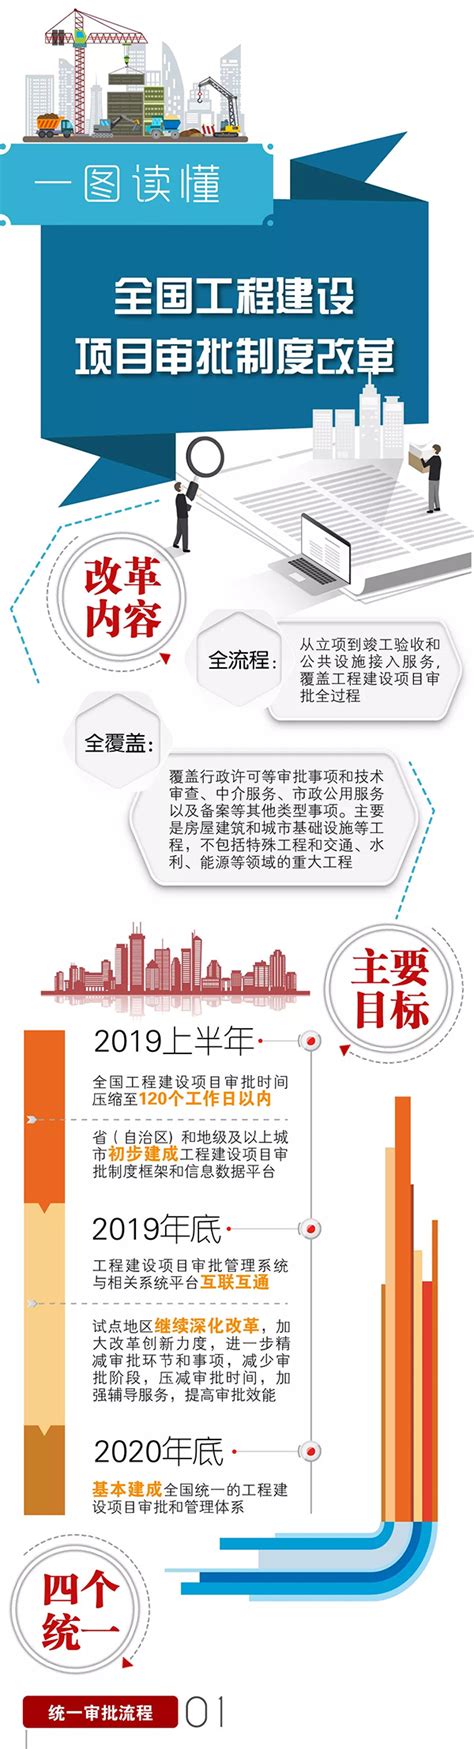 深圳再推工程建设项目审批制度改革重磅举措 全面取消房屋建筑和市政项目施工图审查